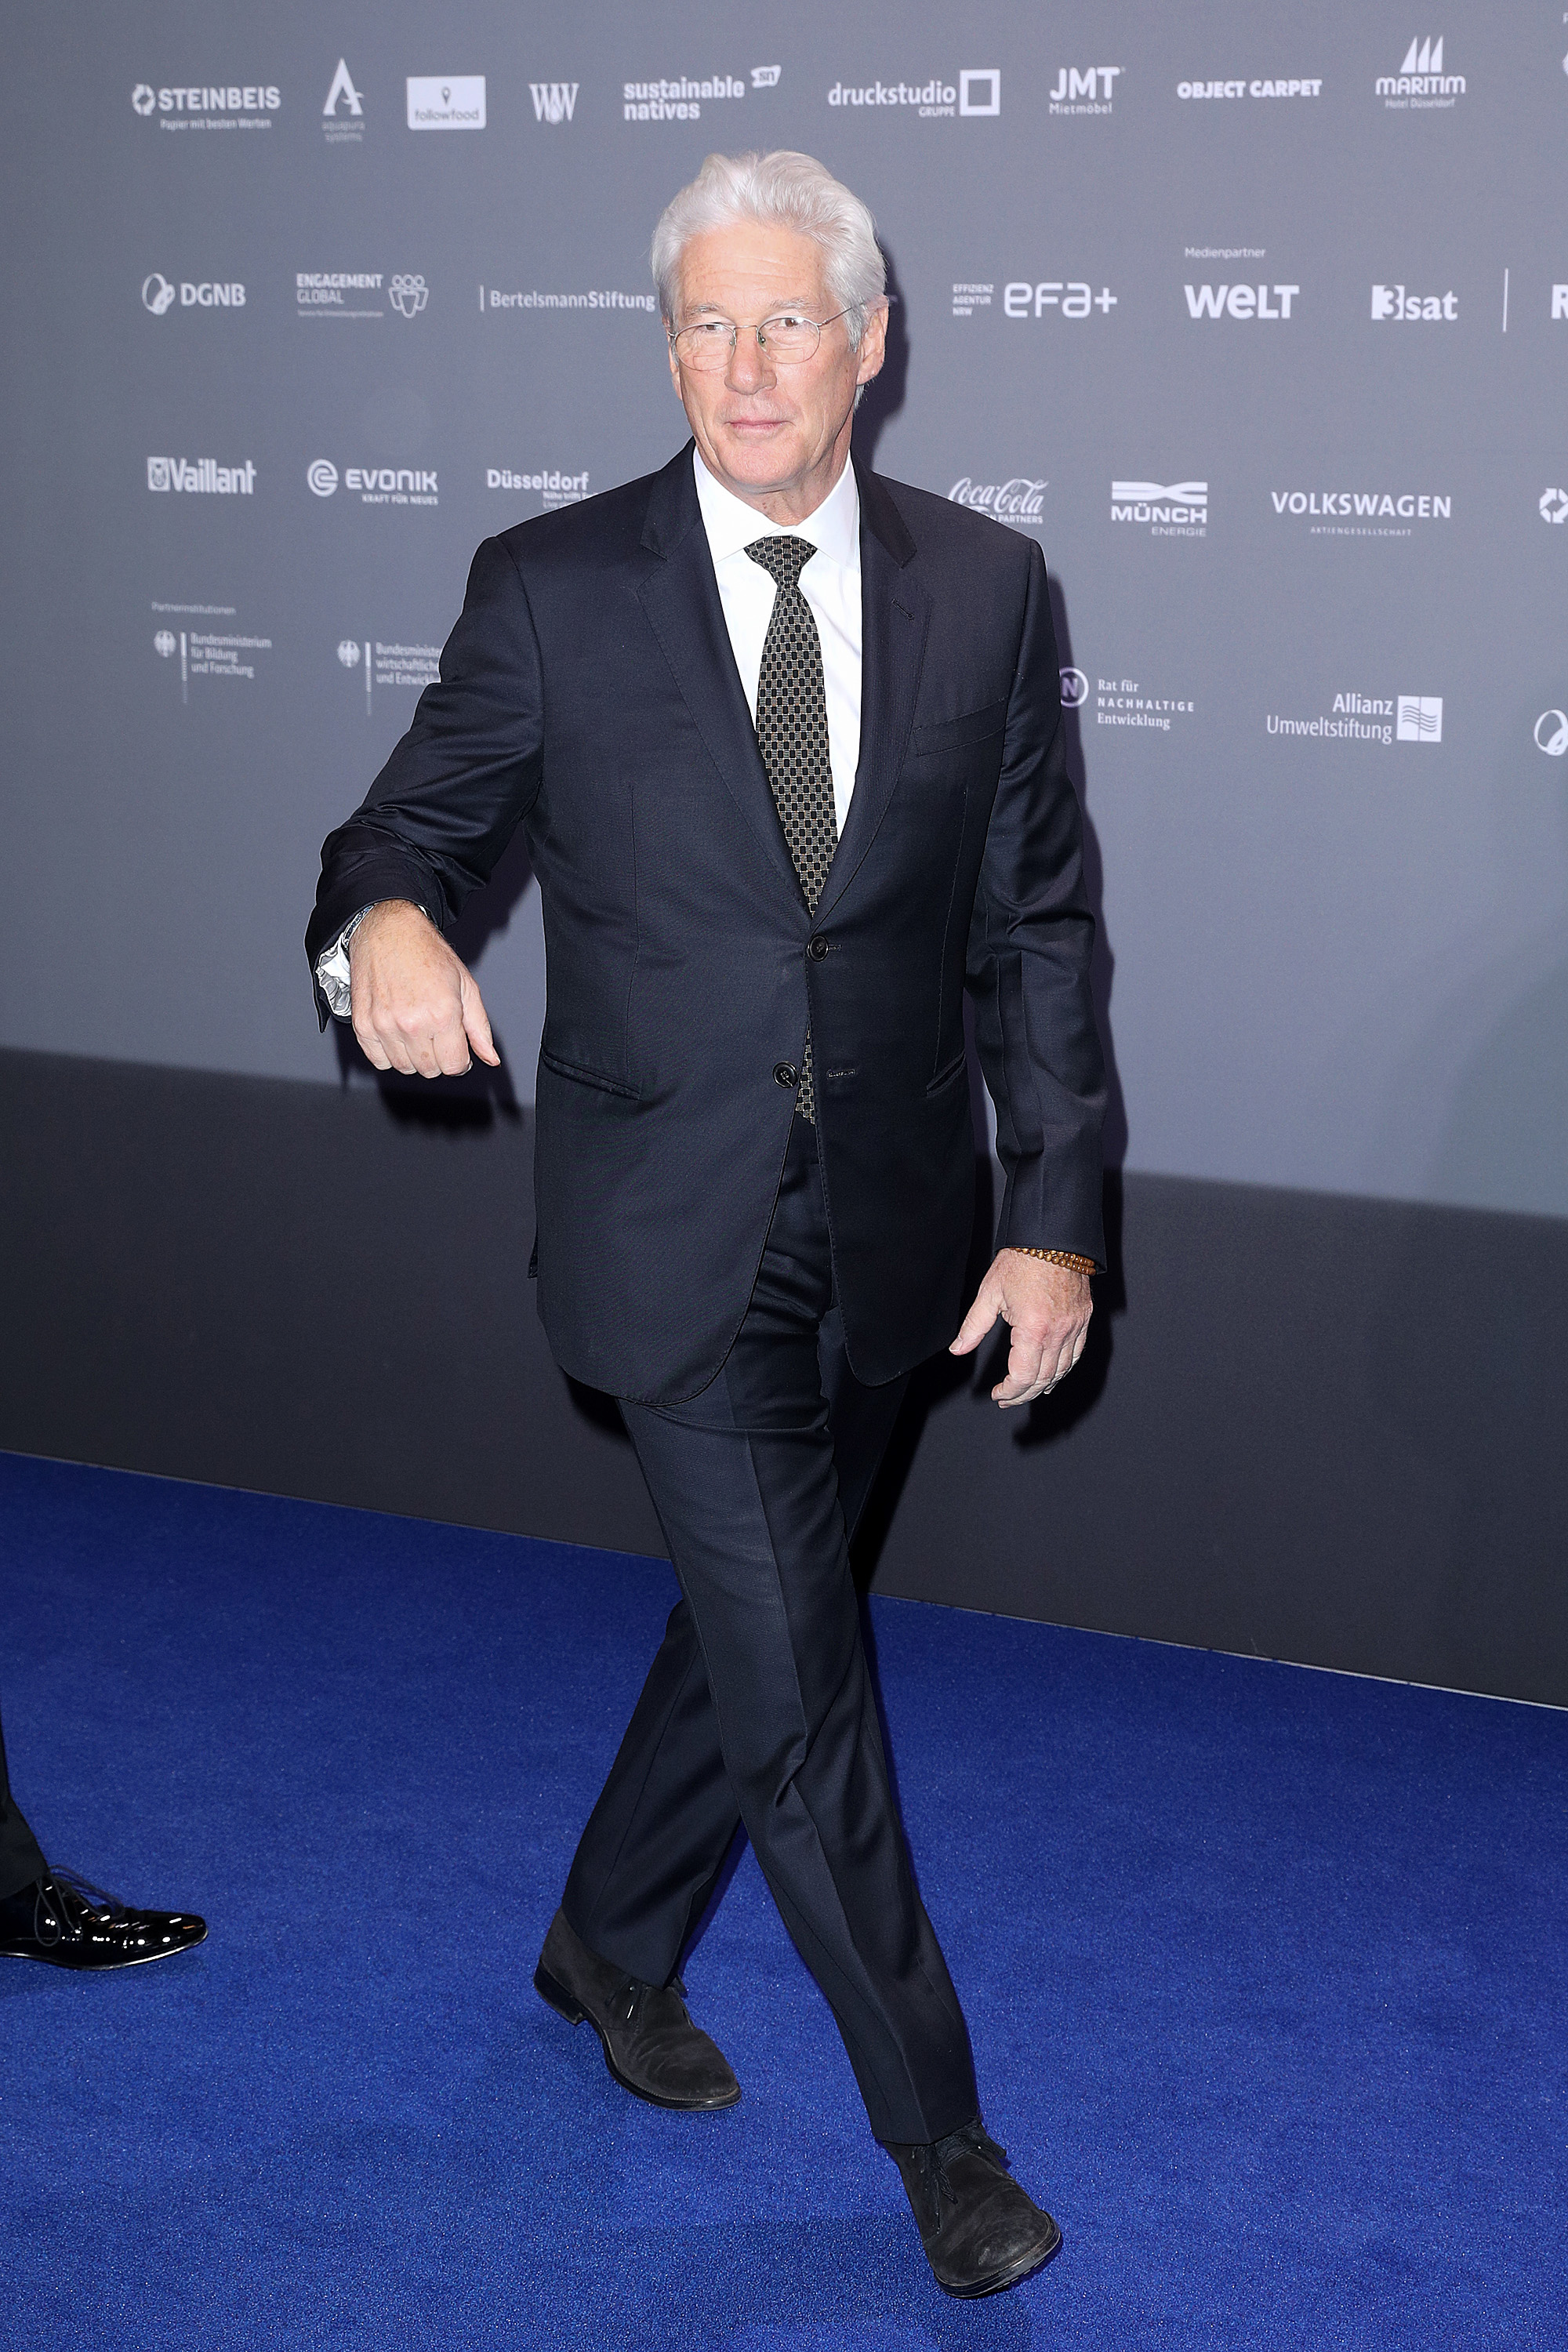 Richard Gere besucht den Deutschen Nachhaltigkeitspreis im Maritim Hotel in Düsseldorf, Deutschland, am 7. Dezember 2018. | Quelle: Getty Images